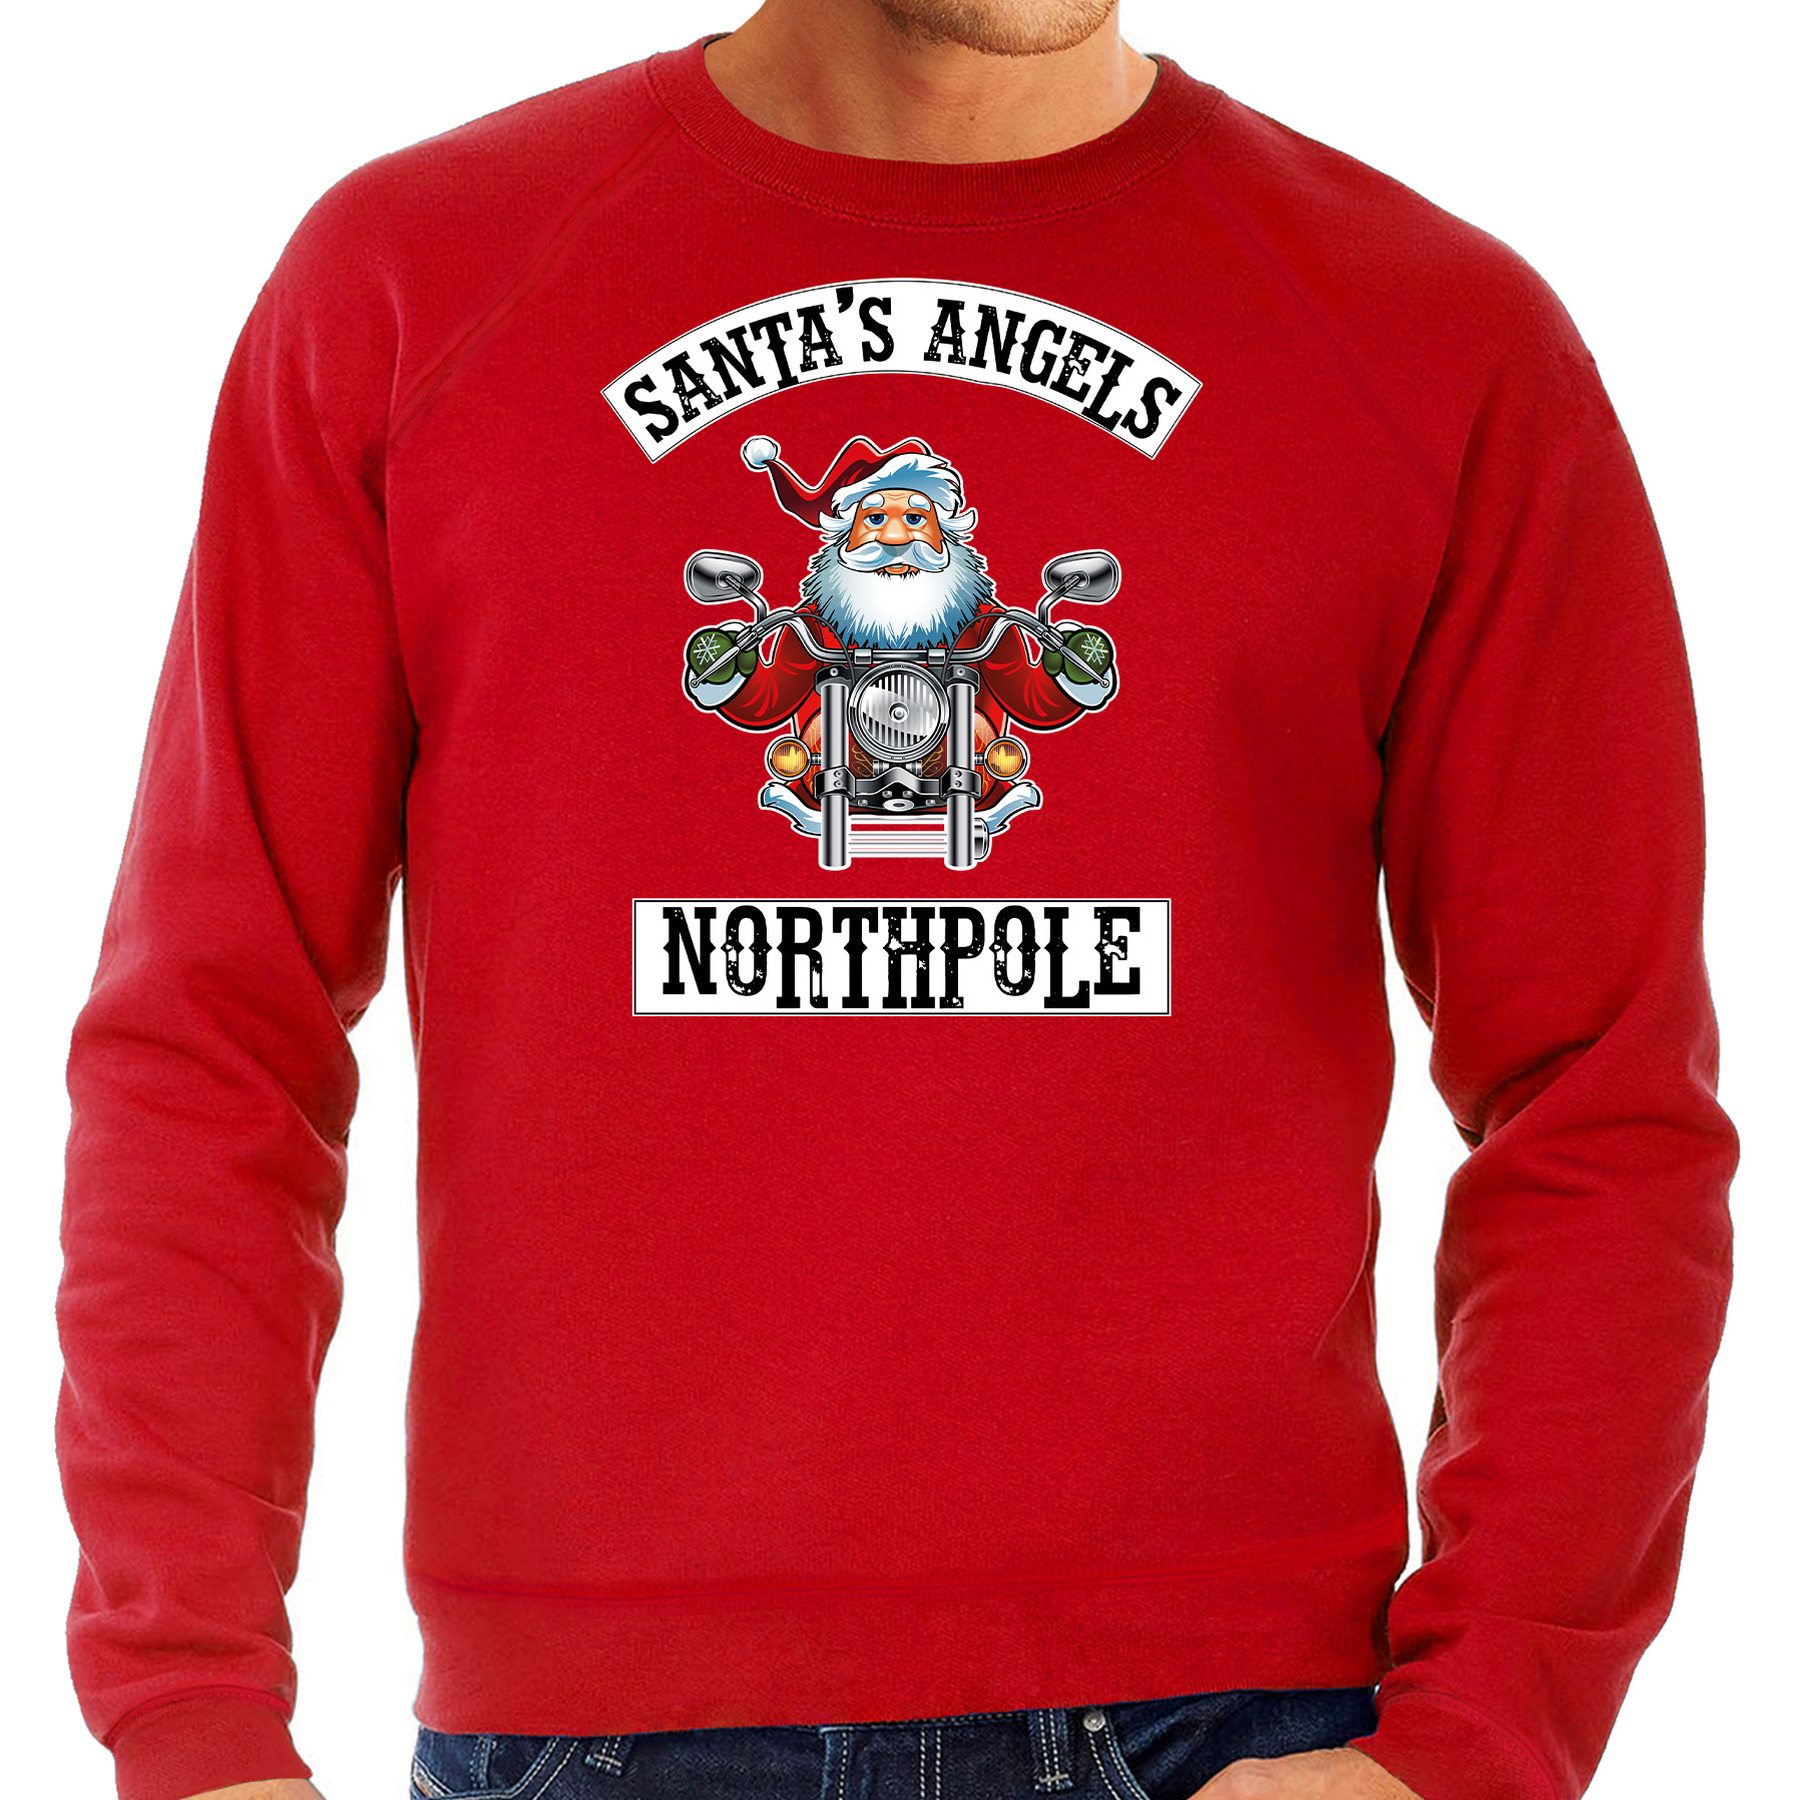 Rode Kersttrui-Kerstkleding Santas angels Northpole voor heren